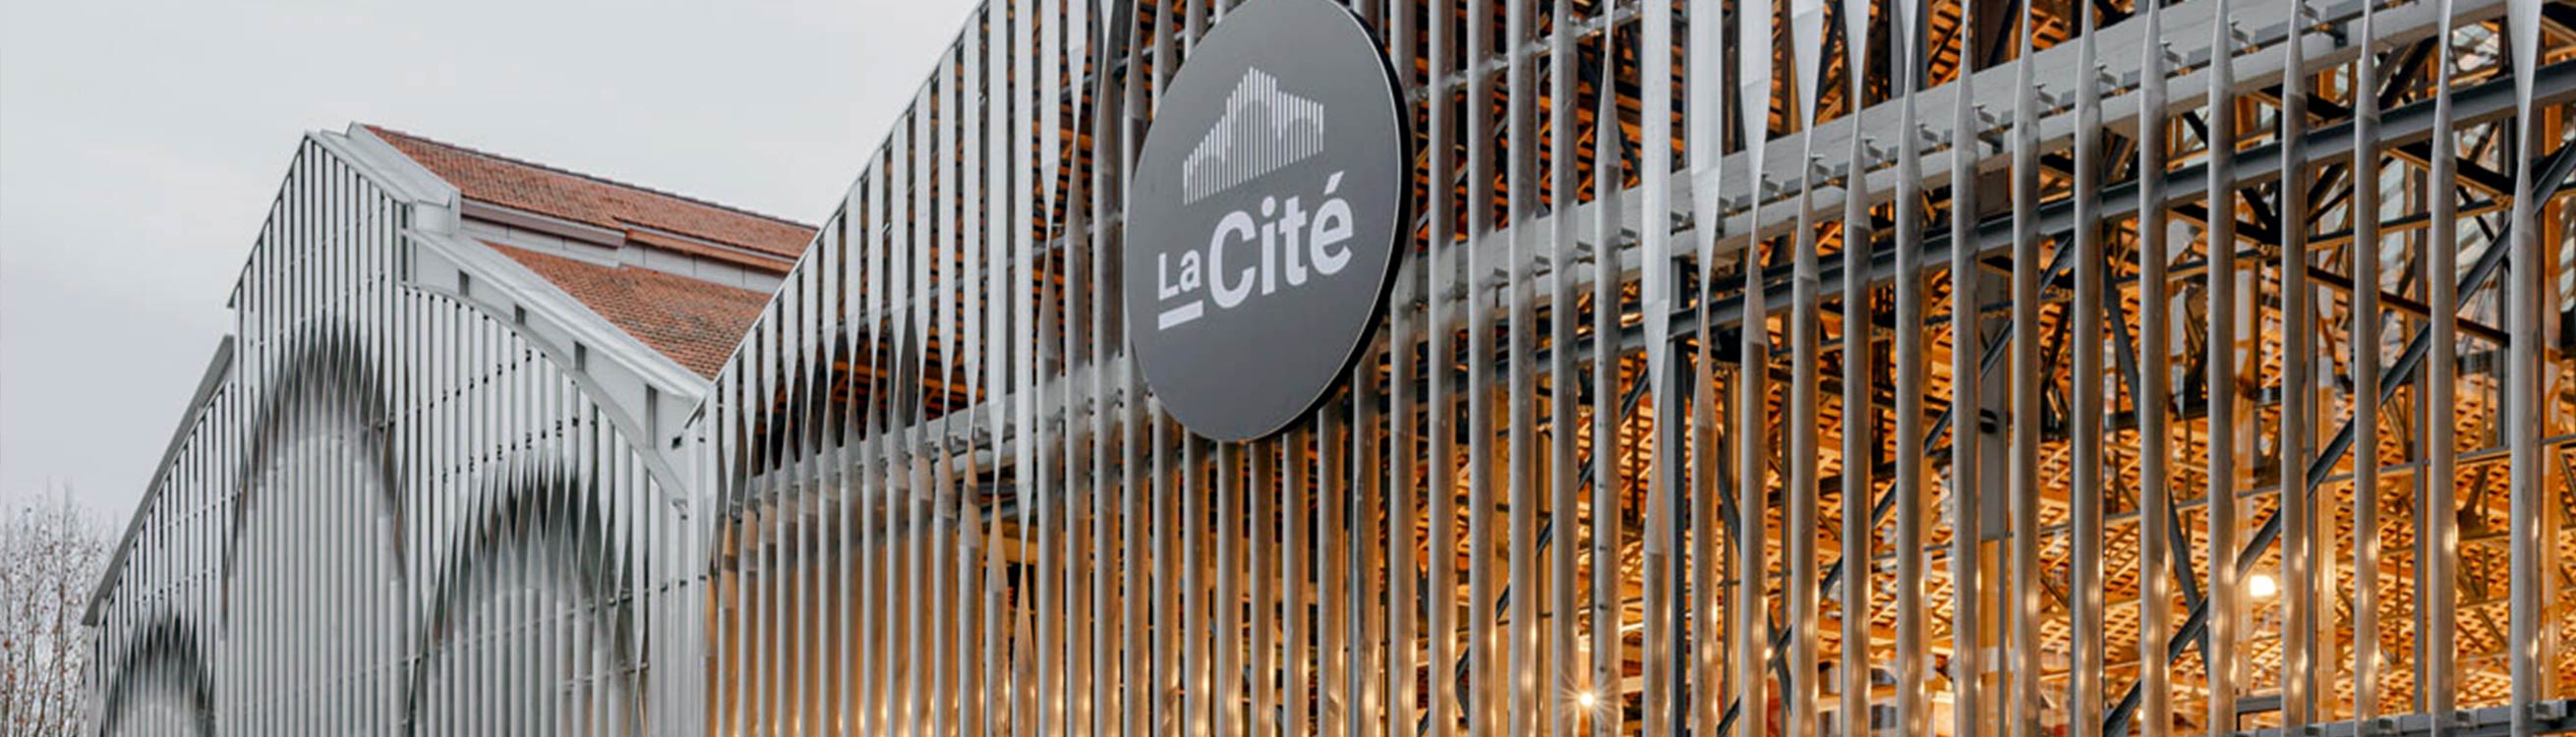 La Cité, France